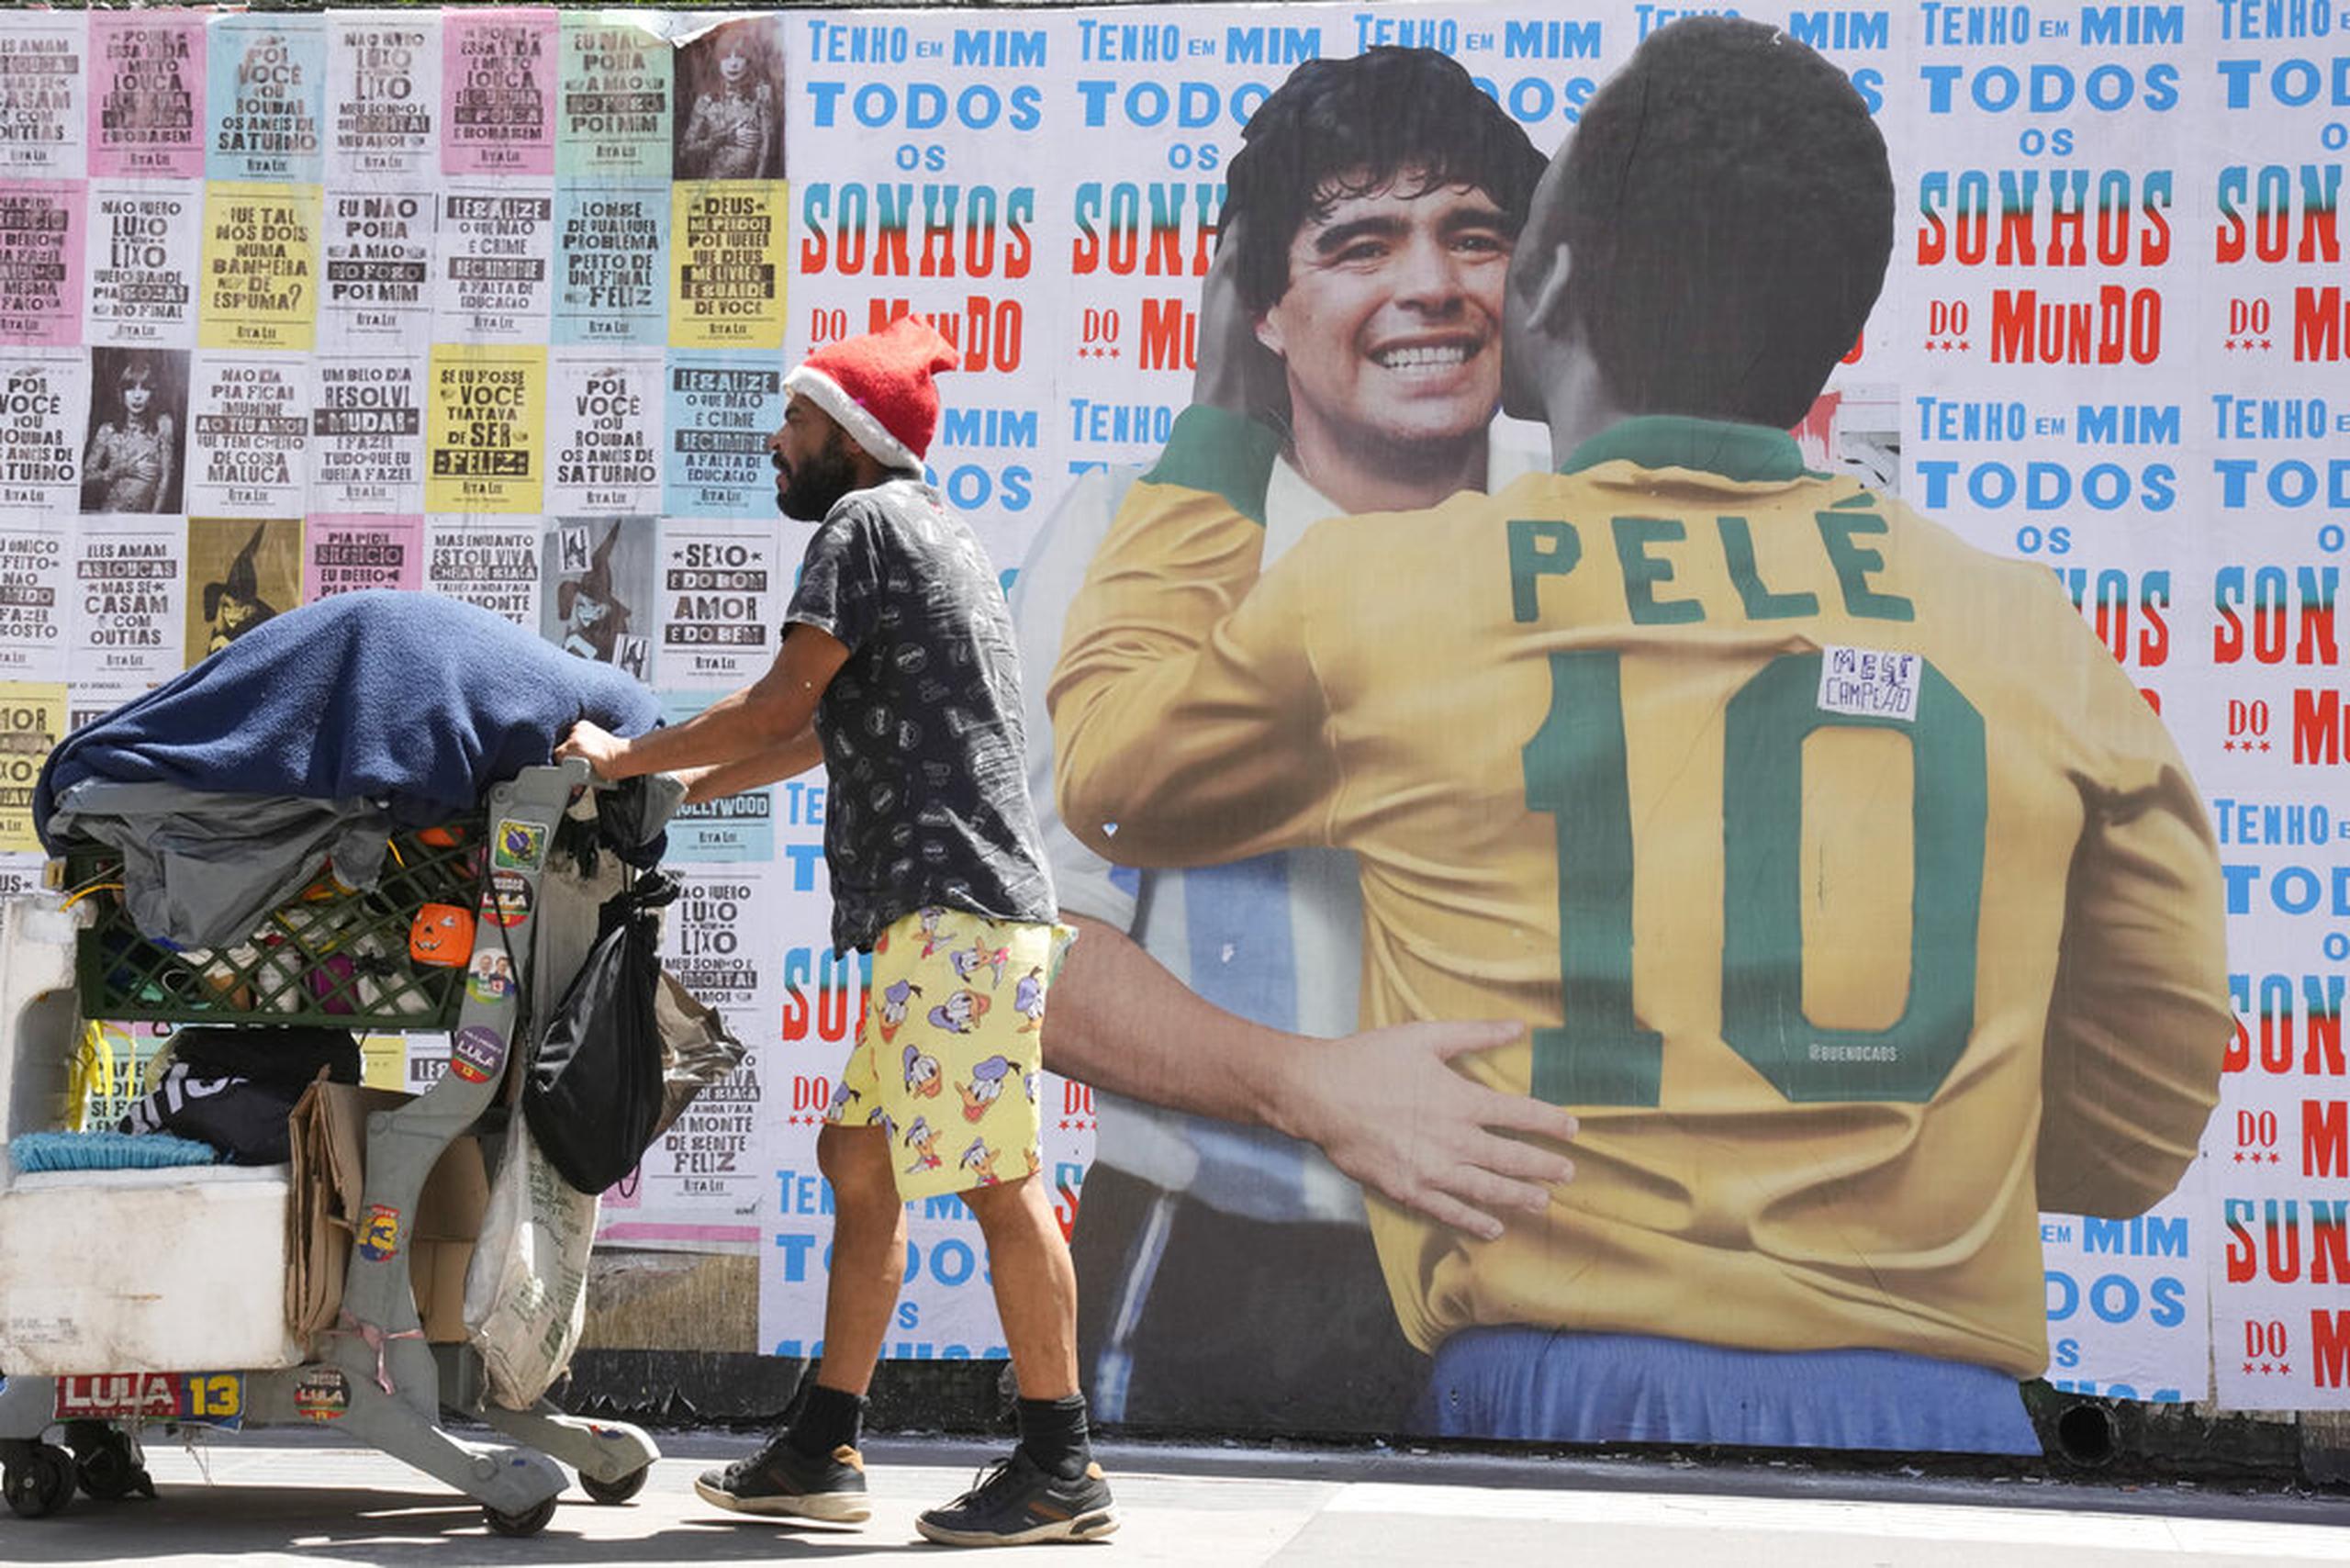 Un hombre empuja un carrito lleno de basura para reciclar frente a un mural en el que se muestra al astro brasileño Pelé abrazando a la difunta estrella del fútbol, el argentino Diego Maradona, en Sao Paulo, Brasil.